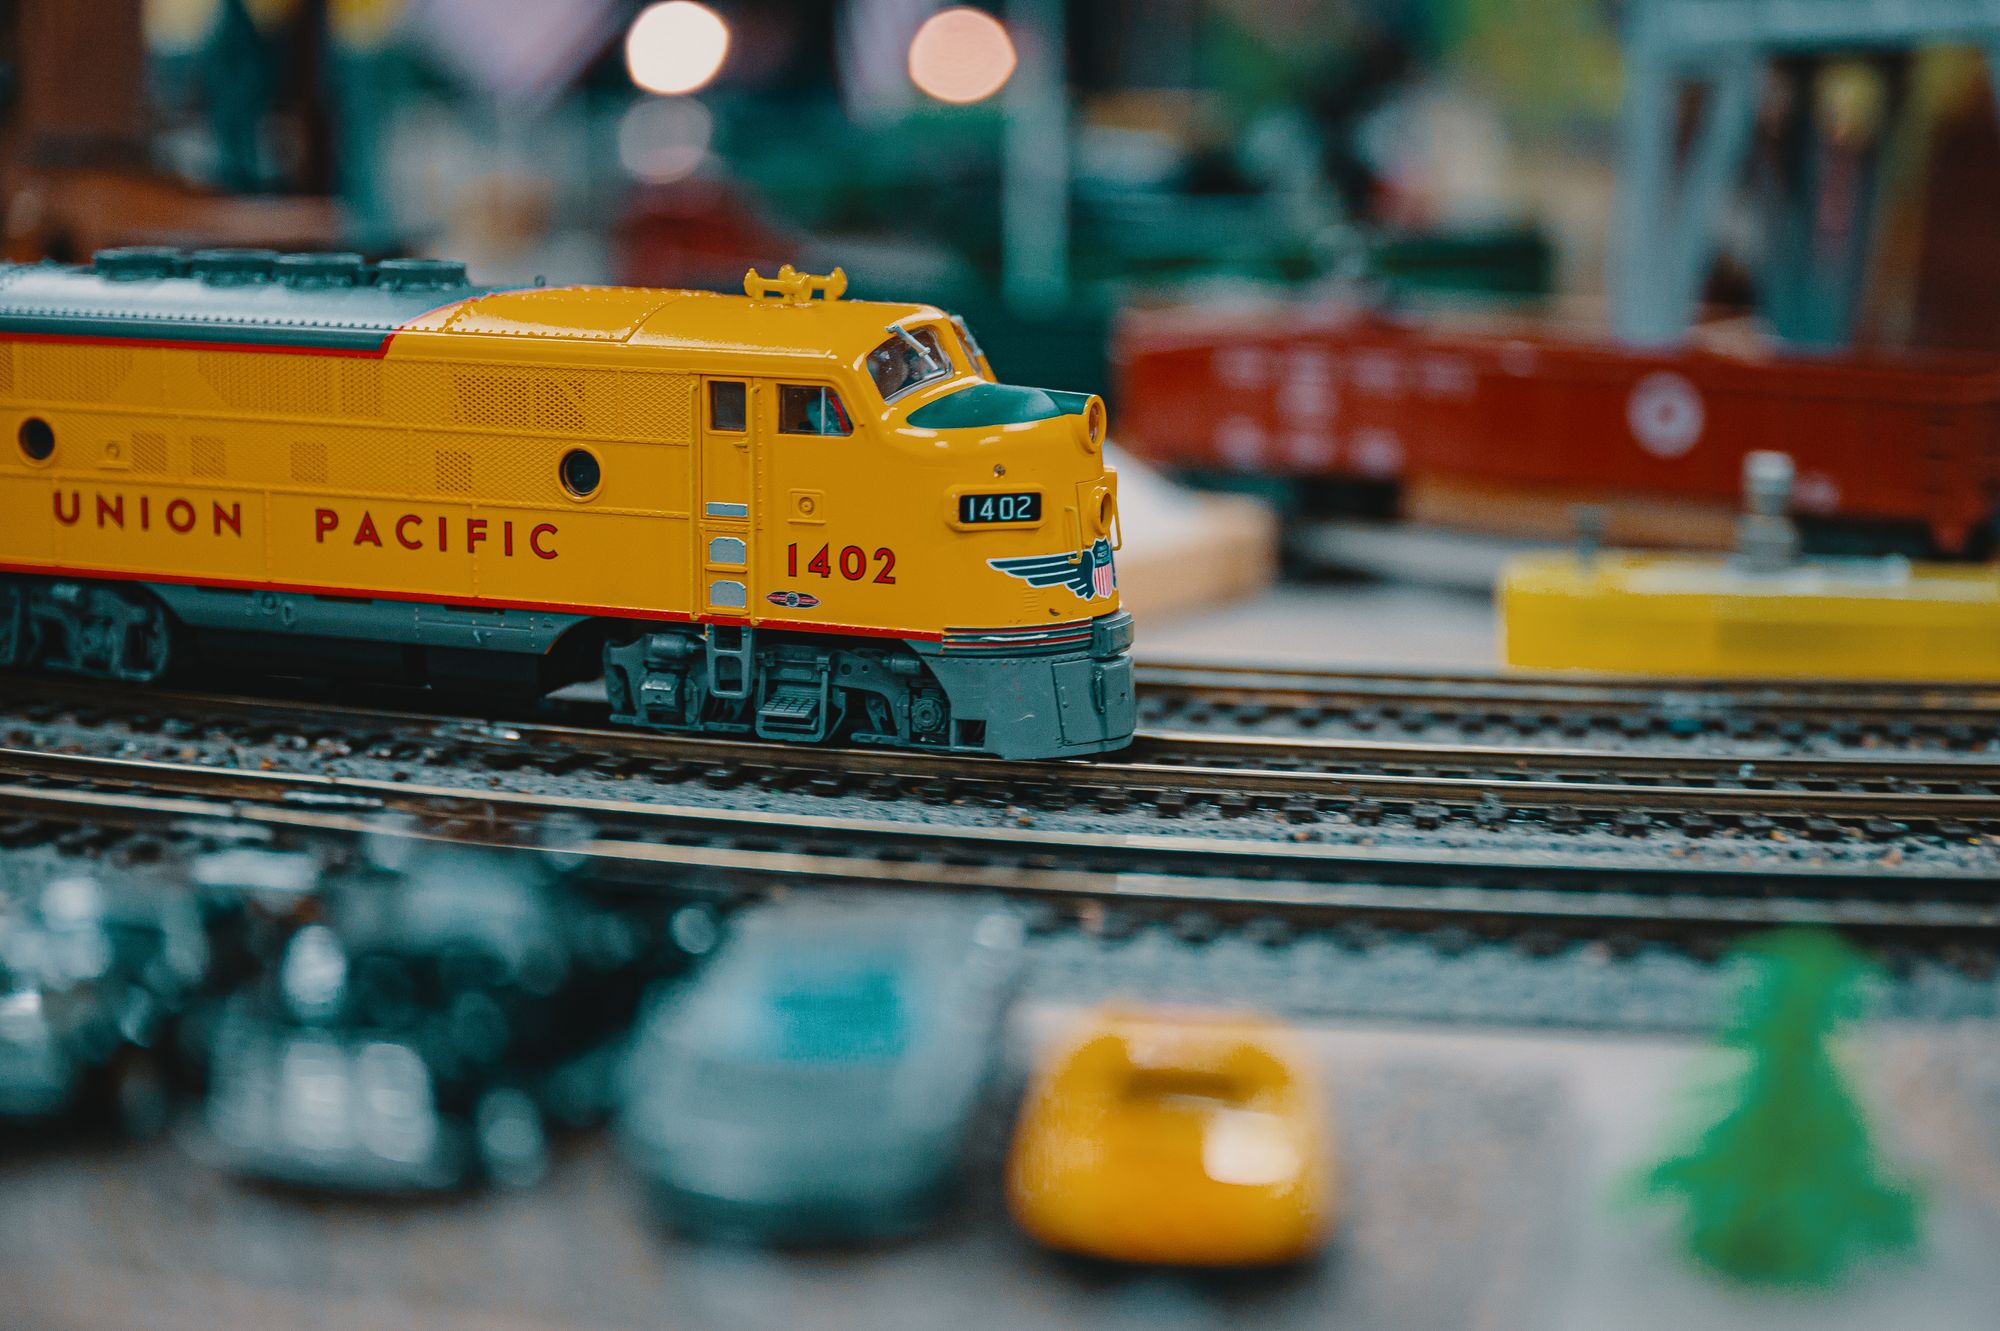 A Union Pacific model train in HO scale